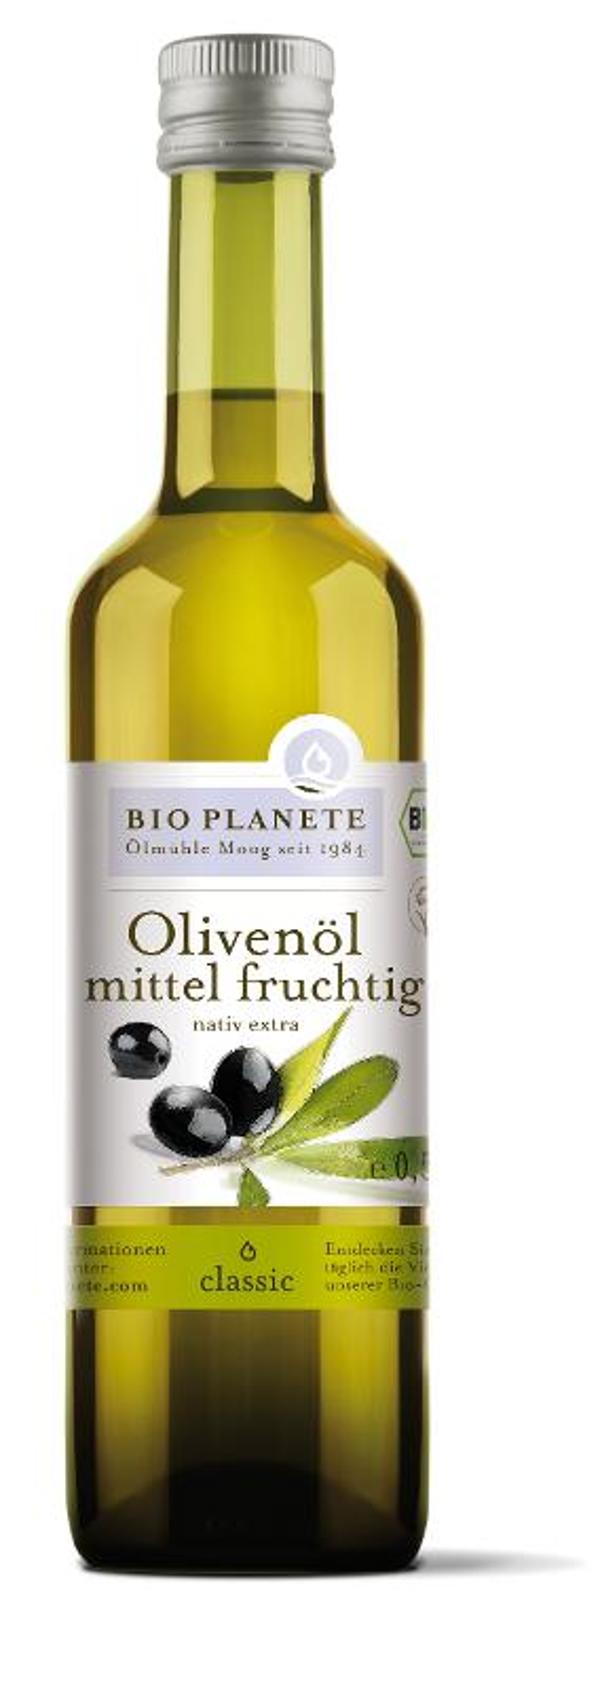 Produktfoto zu Olivenöl 0,5 l mittelfruchtig